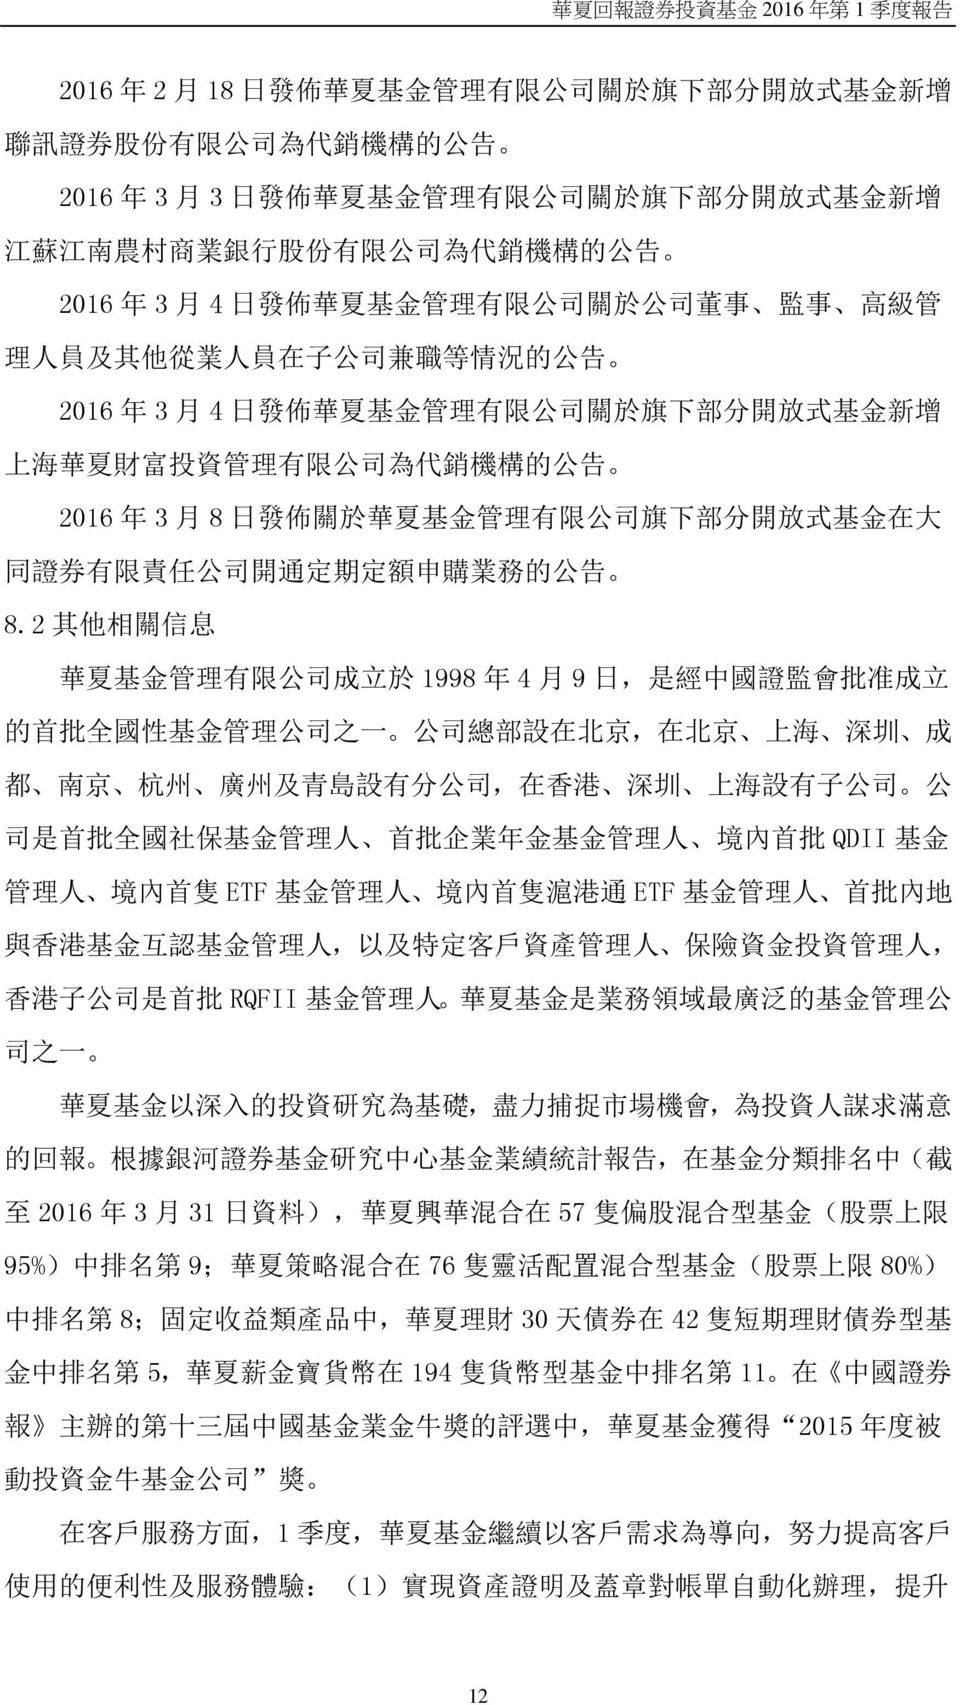 資 管 理 有 限 公 司 為 代 銷 機 構 的 公 告 2016 年 3 月 8 日 發 佈 關 於 華 夏 基 金 管 理 有 限 公 司 旗 下 部 分 開 放 式 基 金 在 大 同 證 券 有 限 責 任 公 司 開 通 定 期 定 額 申 購 業 務 的 公 告 8.